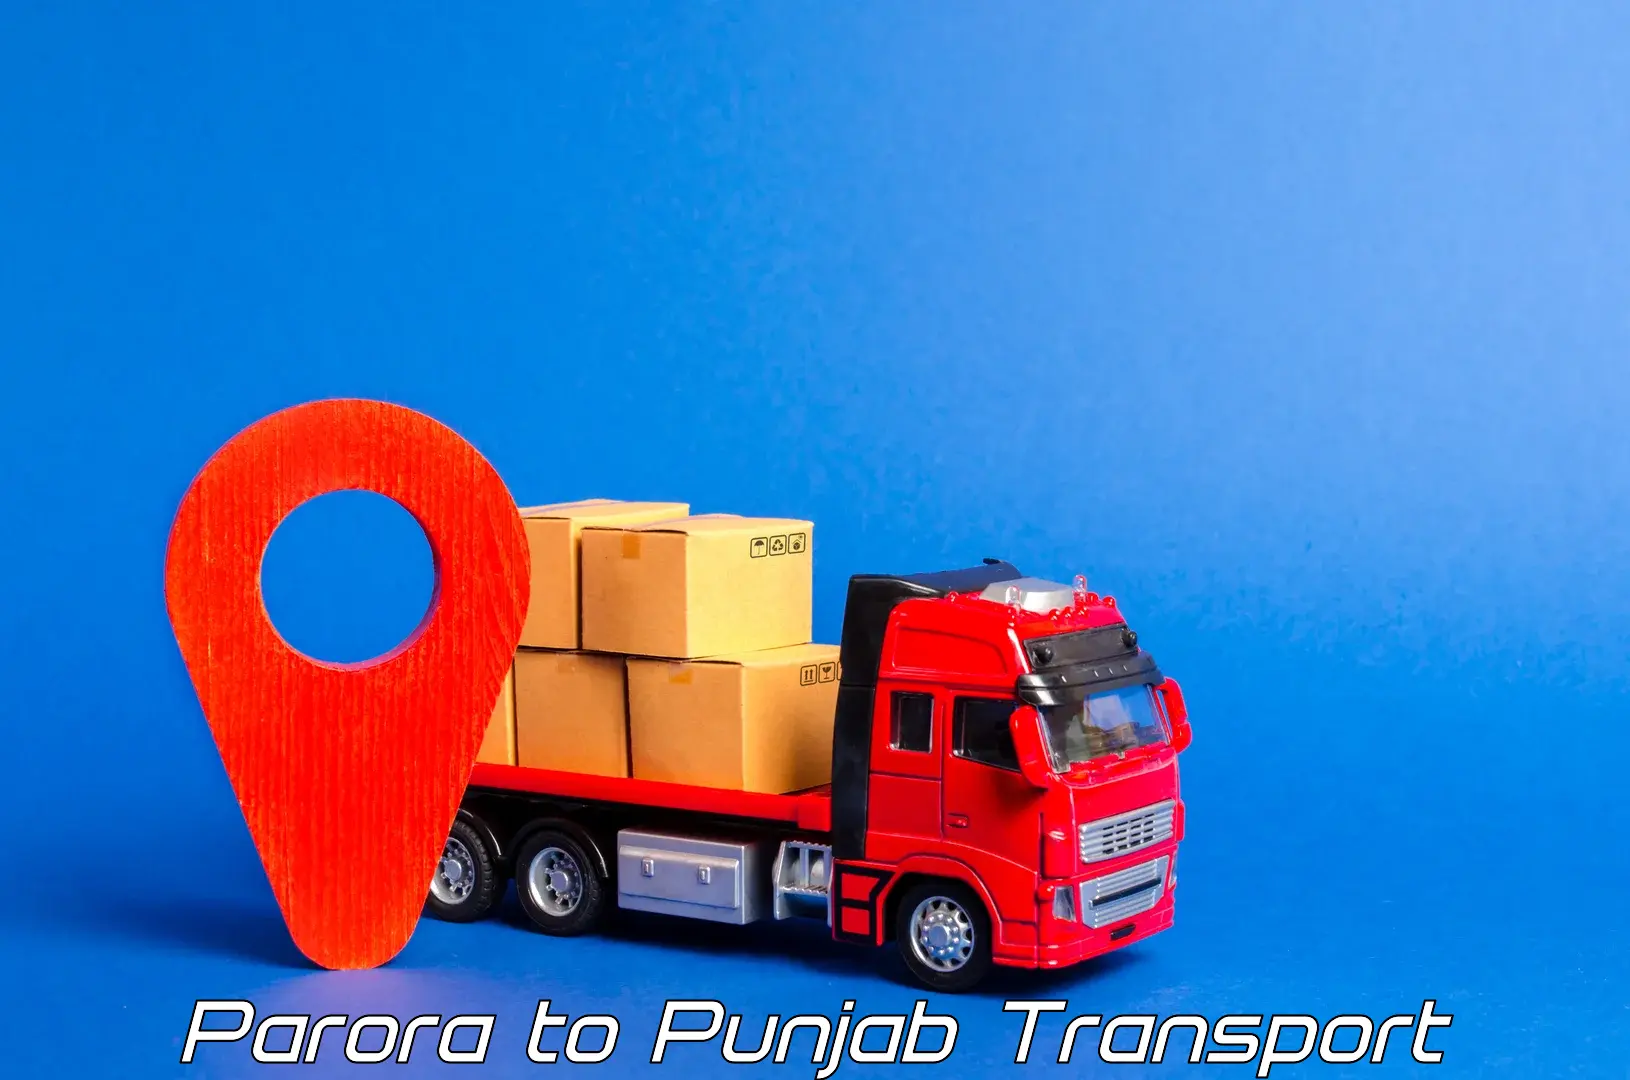 Pick up transport service Parora to Punjab